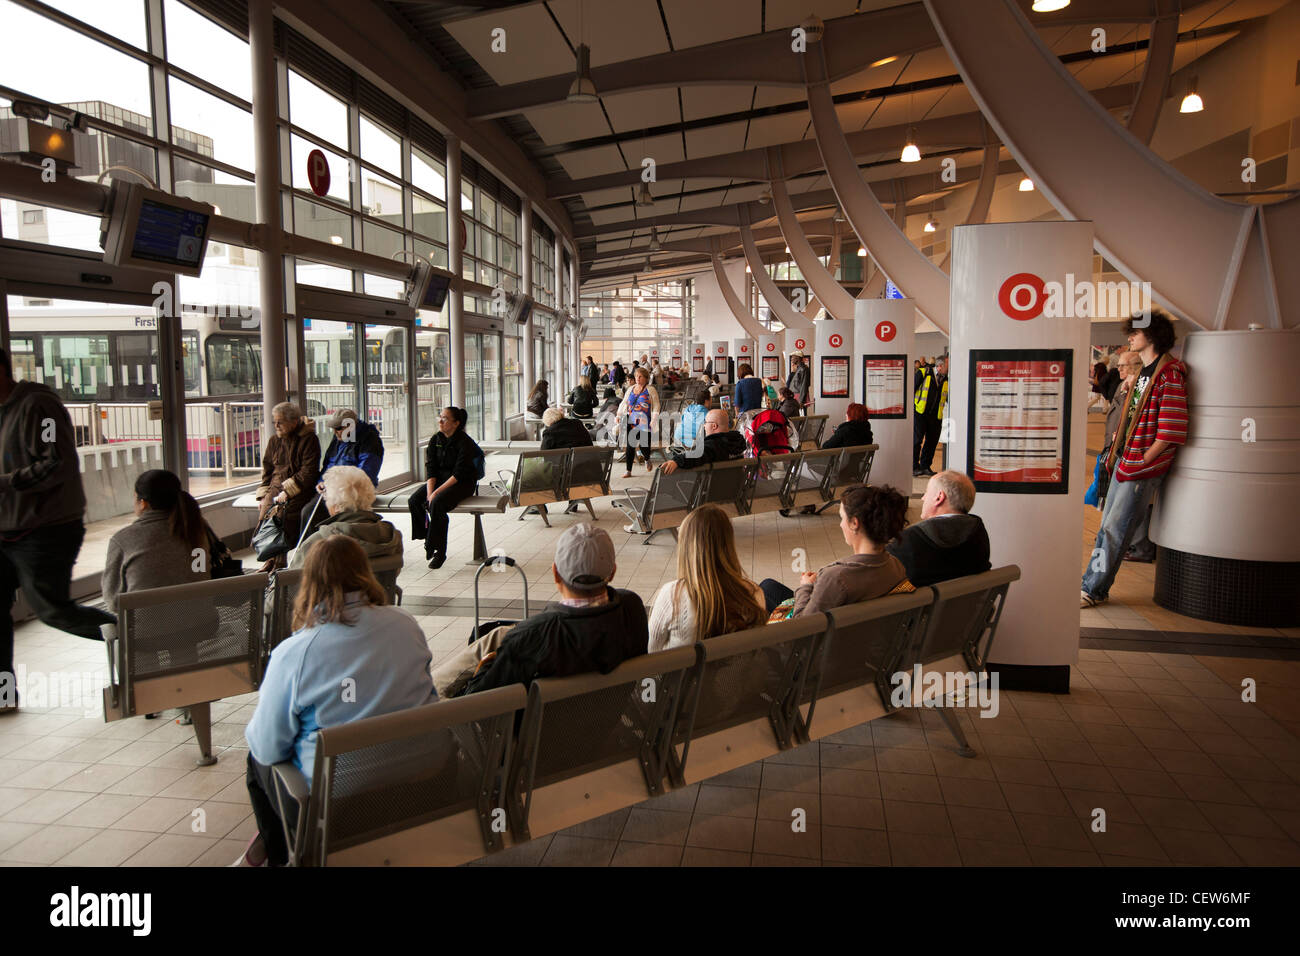 Royaume-uni, Pays de Galles, Swansea, Quadrant Shopping Centre, les passagers en attente dans la gare routière intégrée Banque D'Images